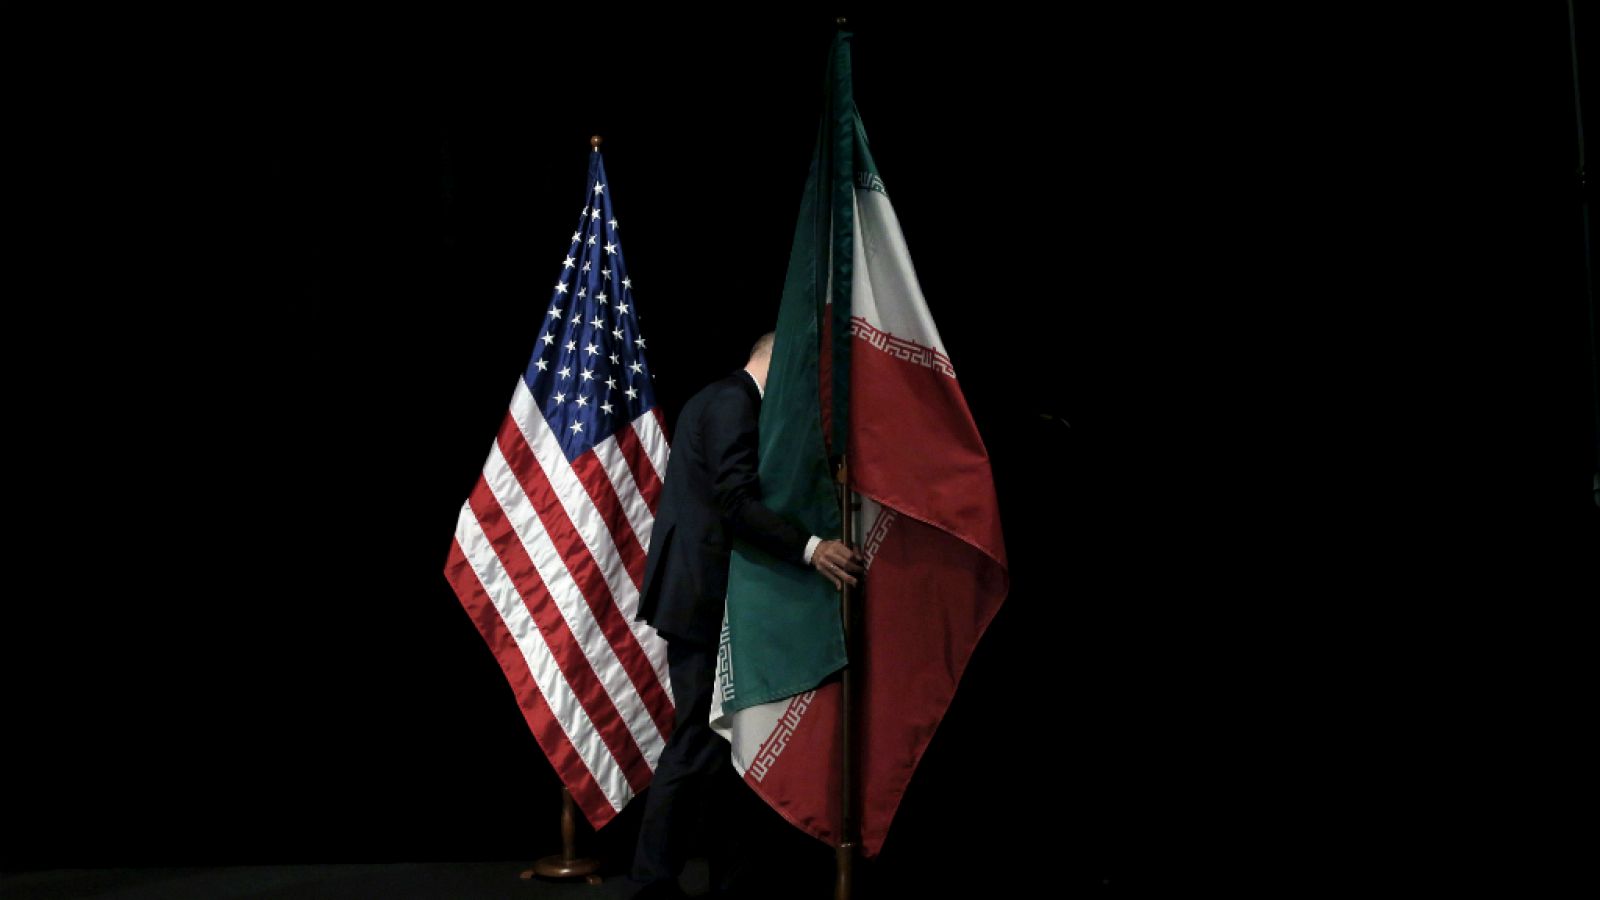 14 horas - Las principales potencias en alerta tras la decisión de Irán  - Escuchar ahora